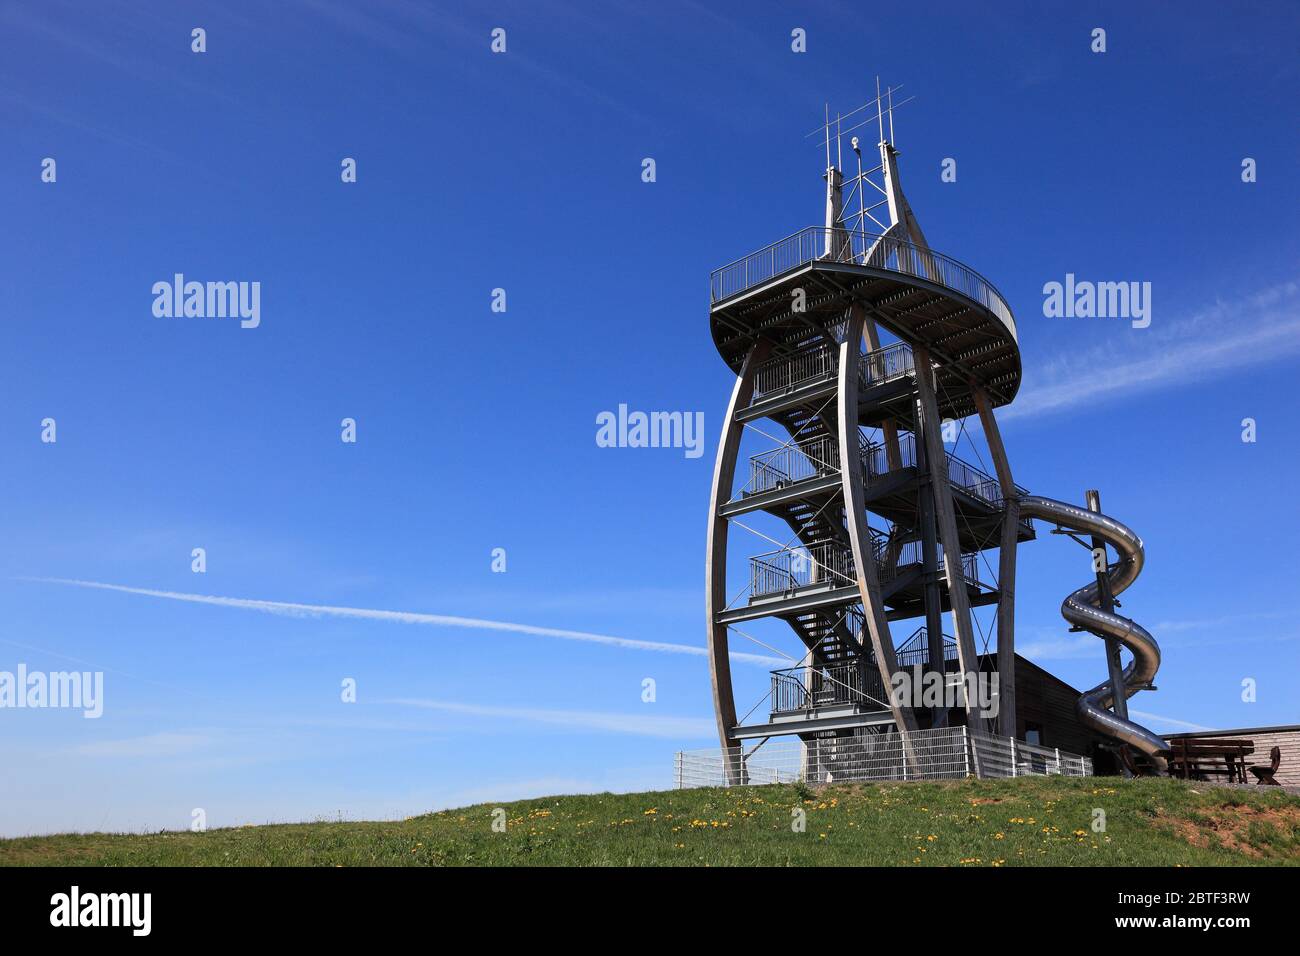 Aussichtsturm Noah segelt am Ellbogen, m 813. Berg an der Rhon in Schmalkalden-Meiningen, Thüringen, Deutschland / Aussichtsturm Noahs Segel am Stockfoto